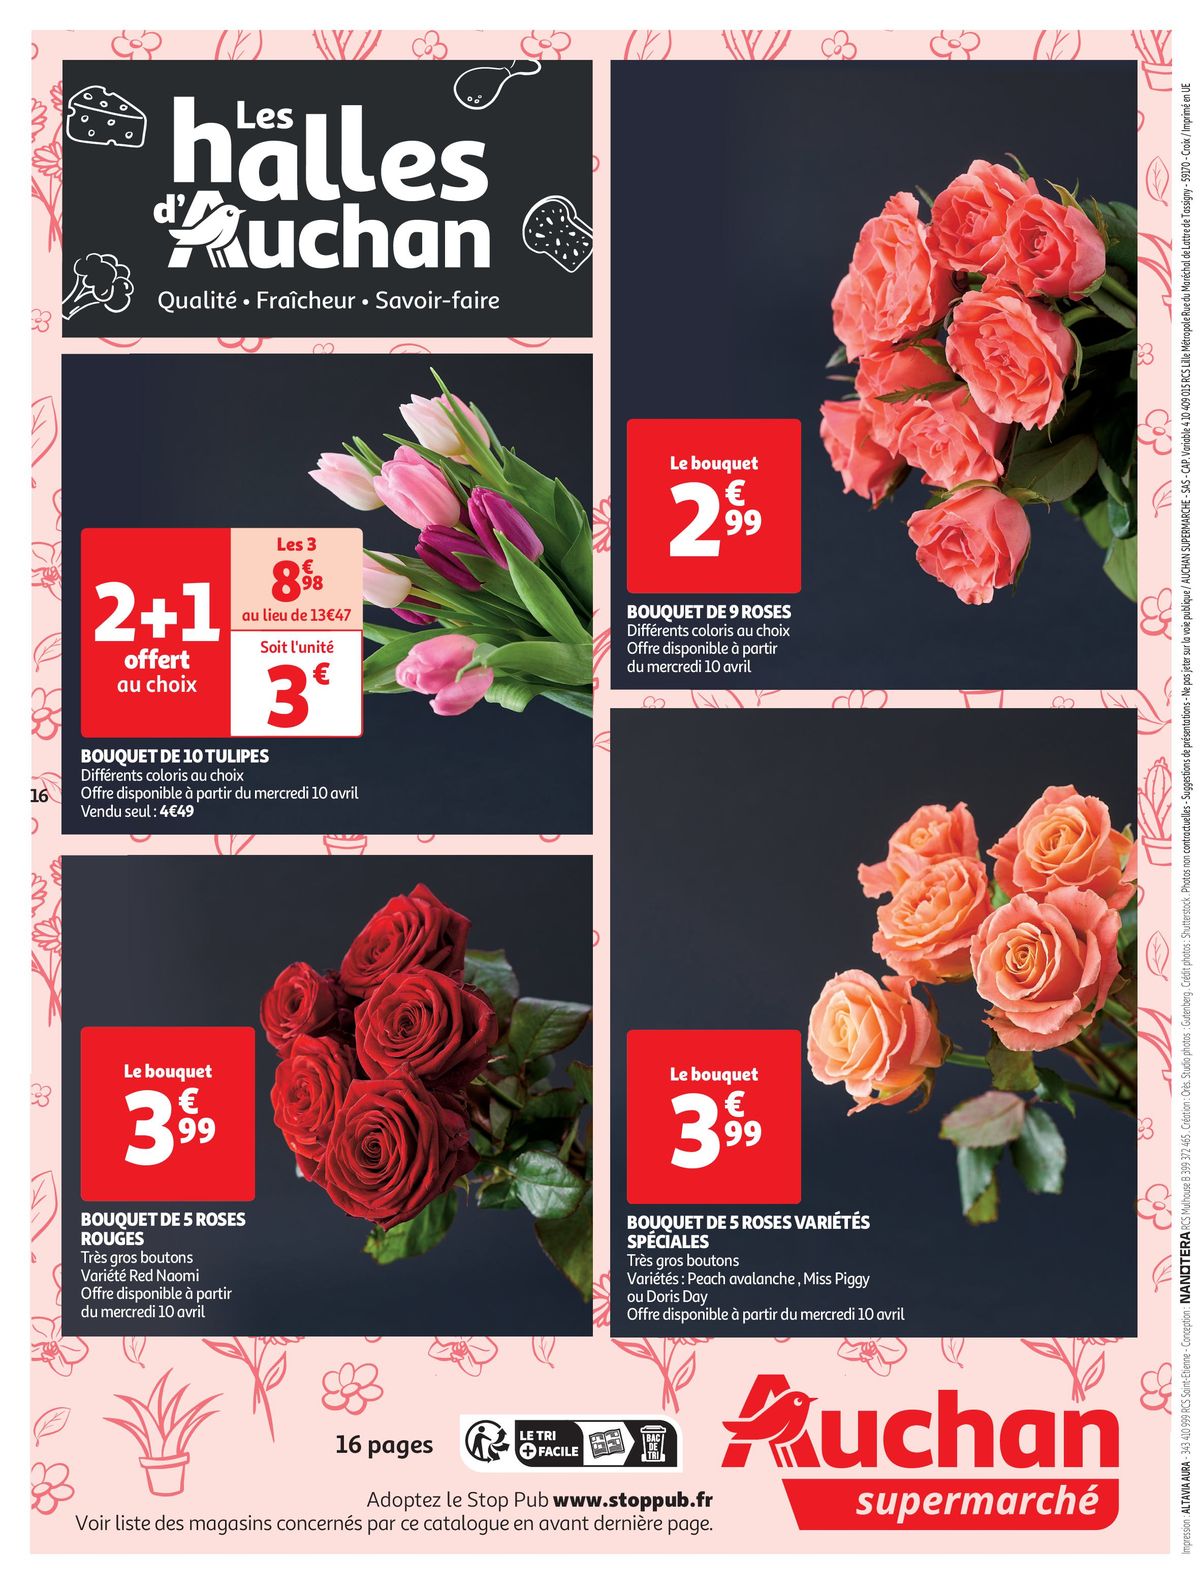 Catalogue Les Halles d'Auchan dans votre Super, page 00016